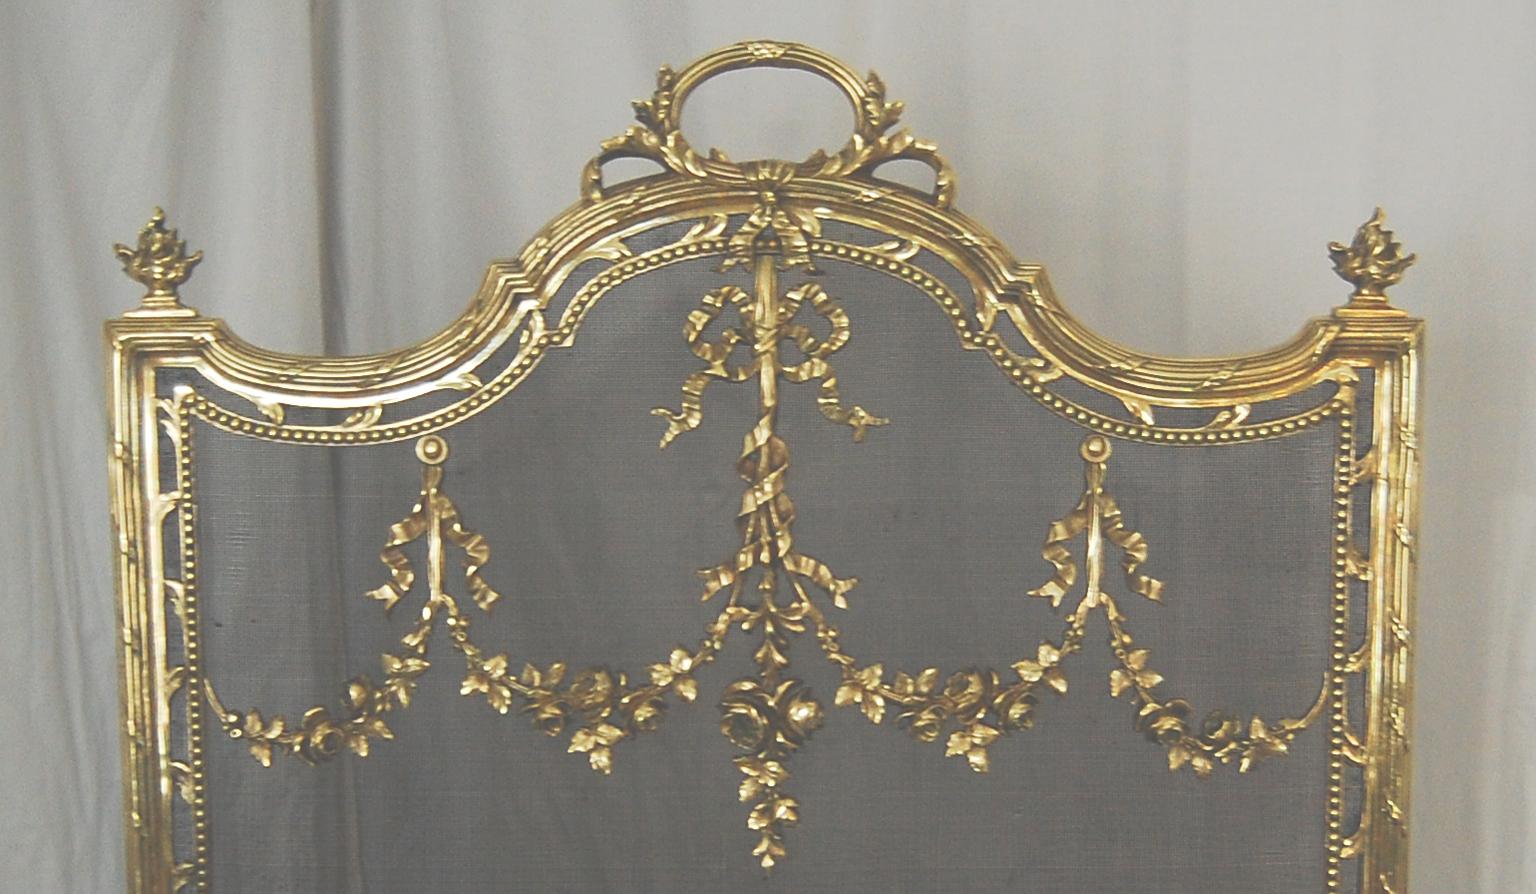  Französisch Louis XVI-Stil 19. Jahrhundert gegossenem Messing mit Stahlgewebe klassischen Kaminschirm.  Dieser Paravent aus schwerem Messingguss ist mit Blumen und Bändern verziert, die sich über das feine Stahlgewebe ziehen.  Der integrierte obere